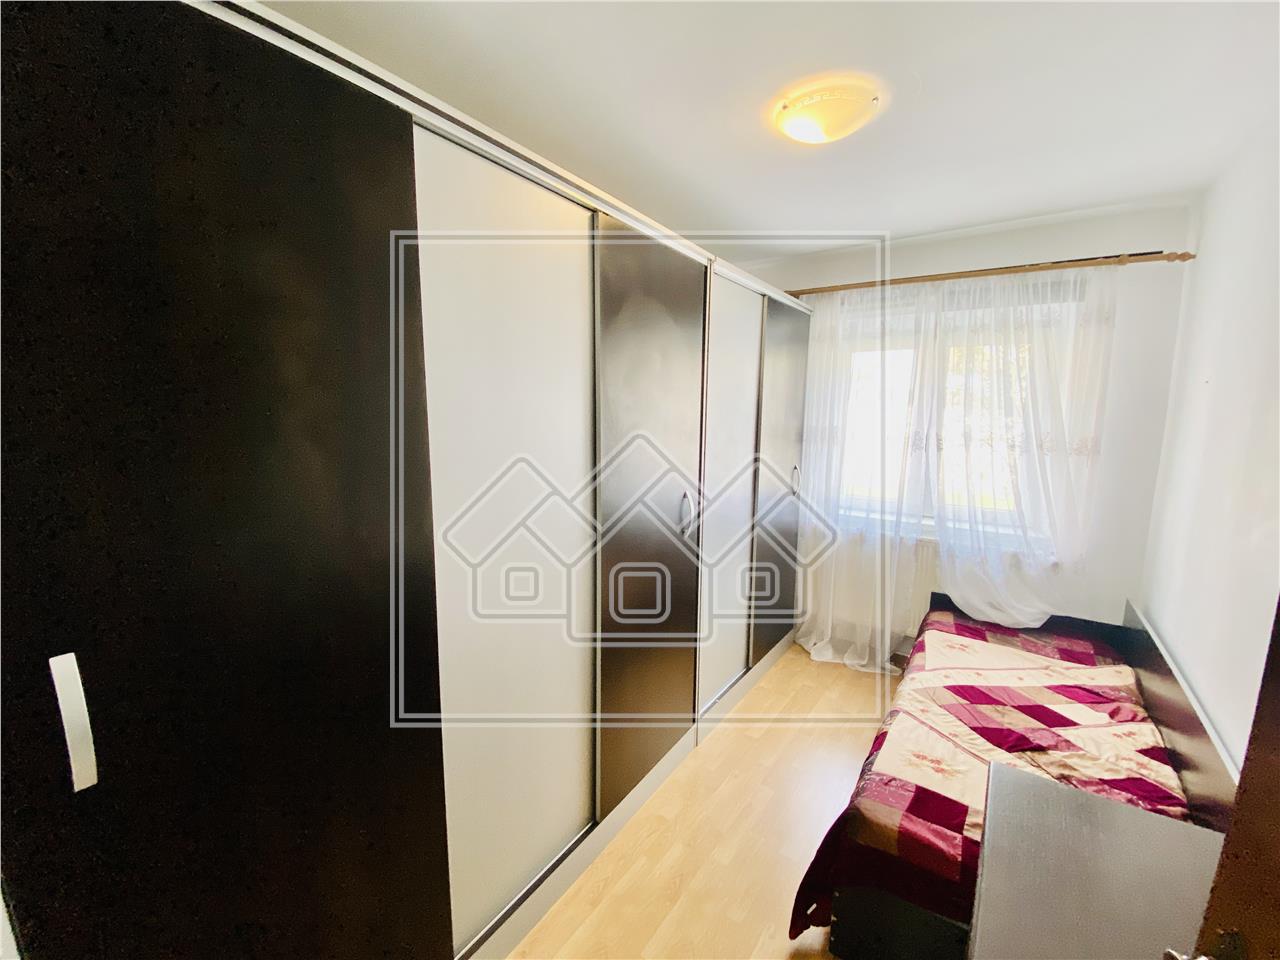 Wohnung zum Verkauf in Sibiu - 3 Zimmer und Keller - V. Aaron Area